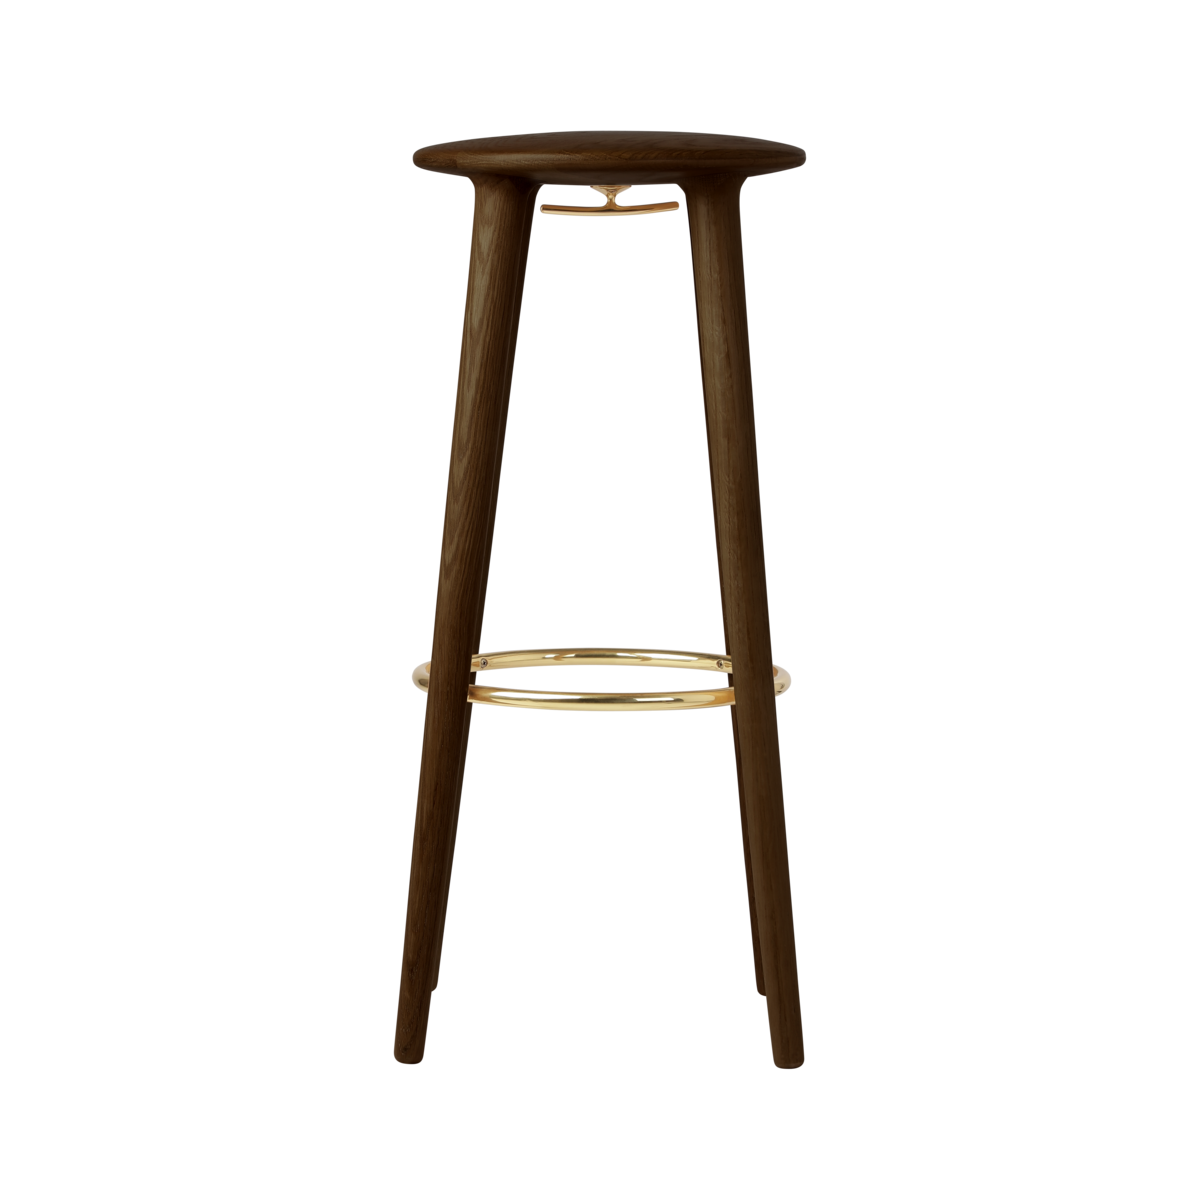 The Socialite bar stool in Eiche Dunkel präsentiert im Onlineshop von KAQTU Design AG. Barhocker ist von Umage